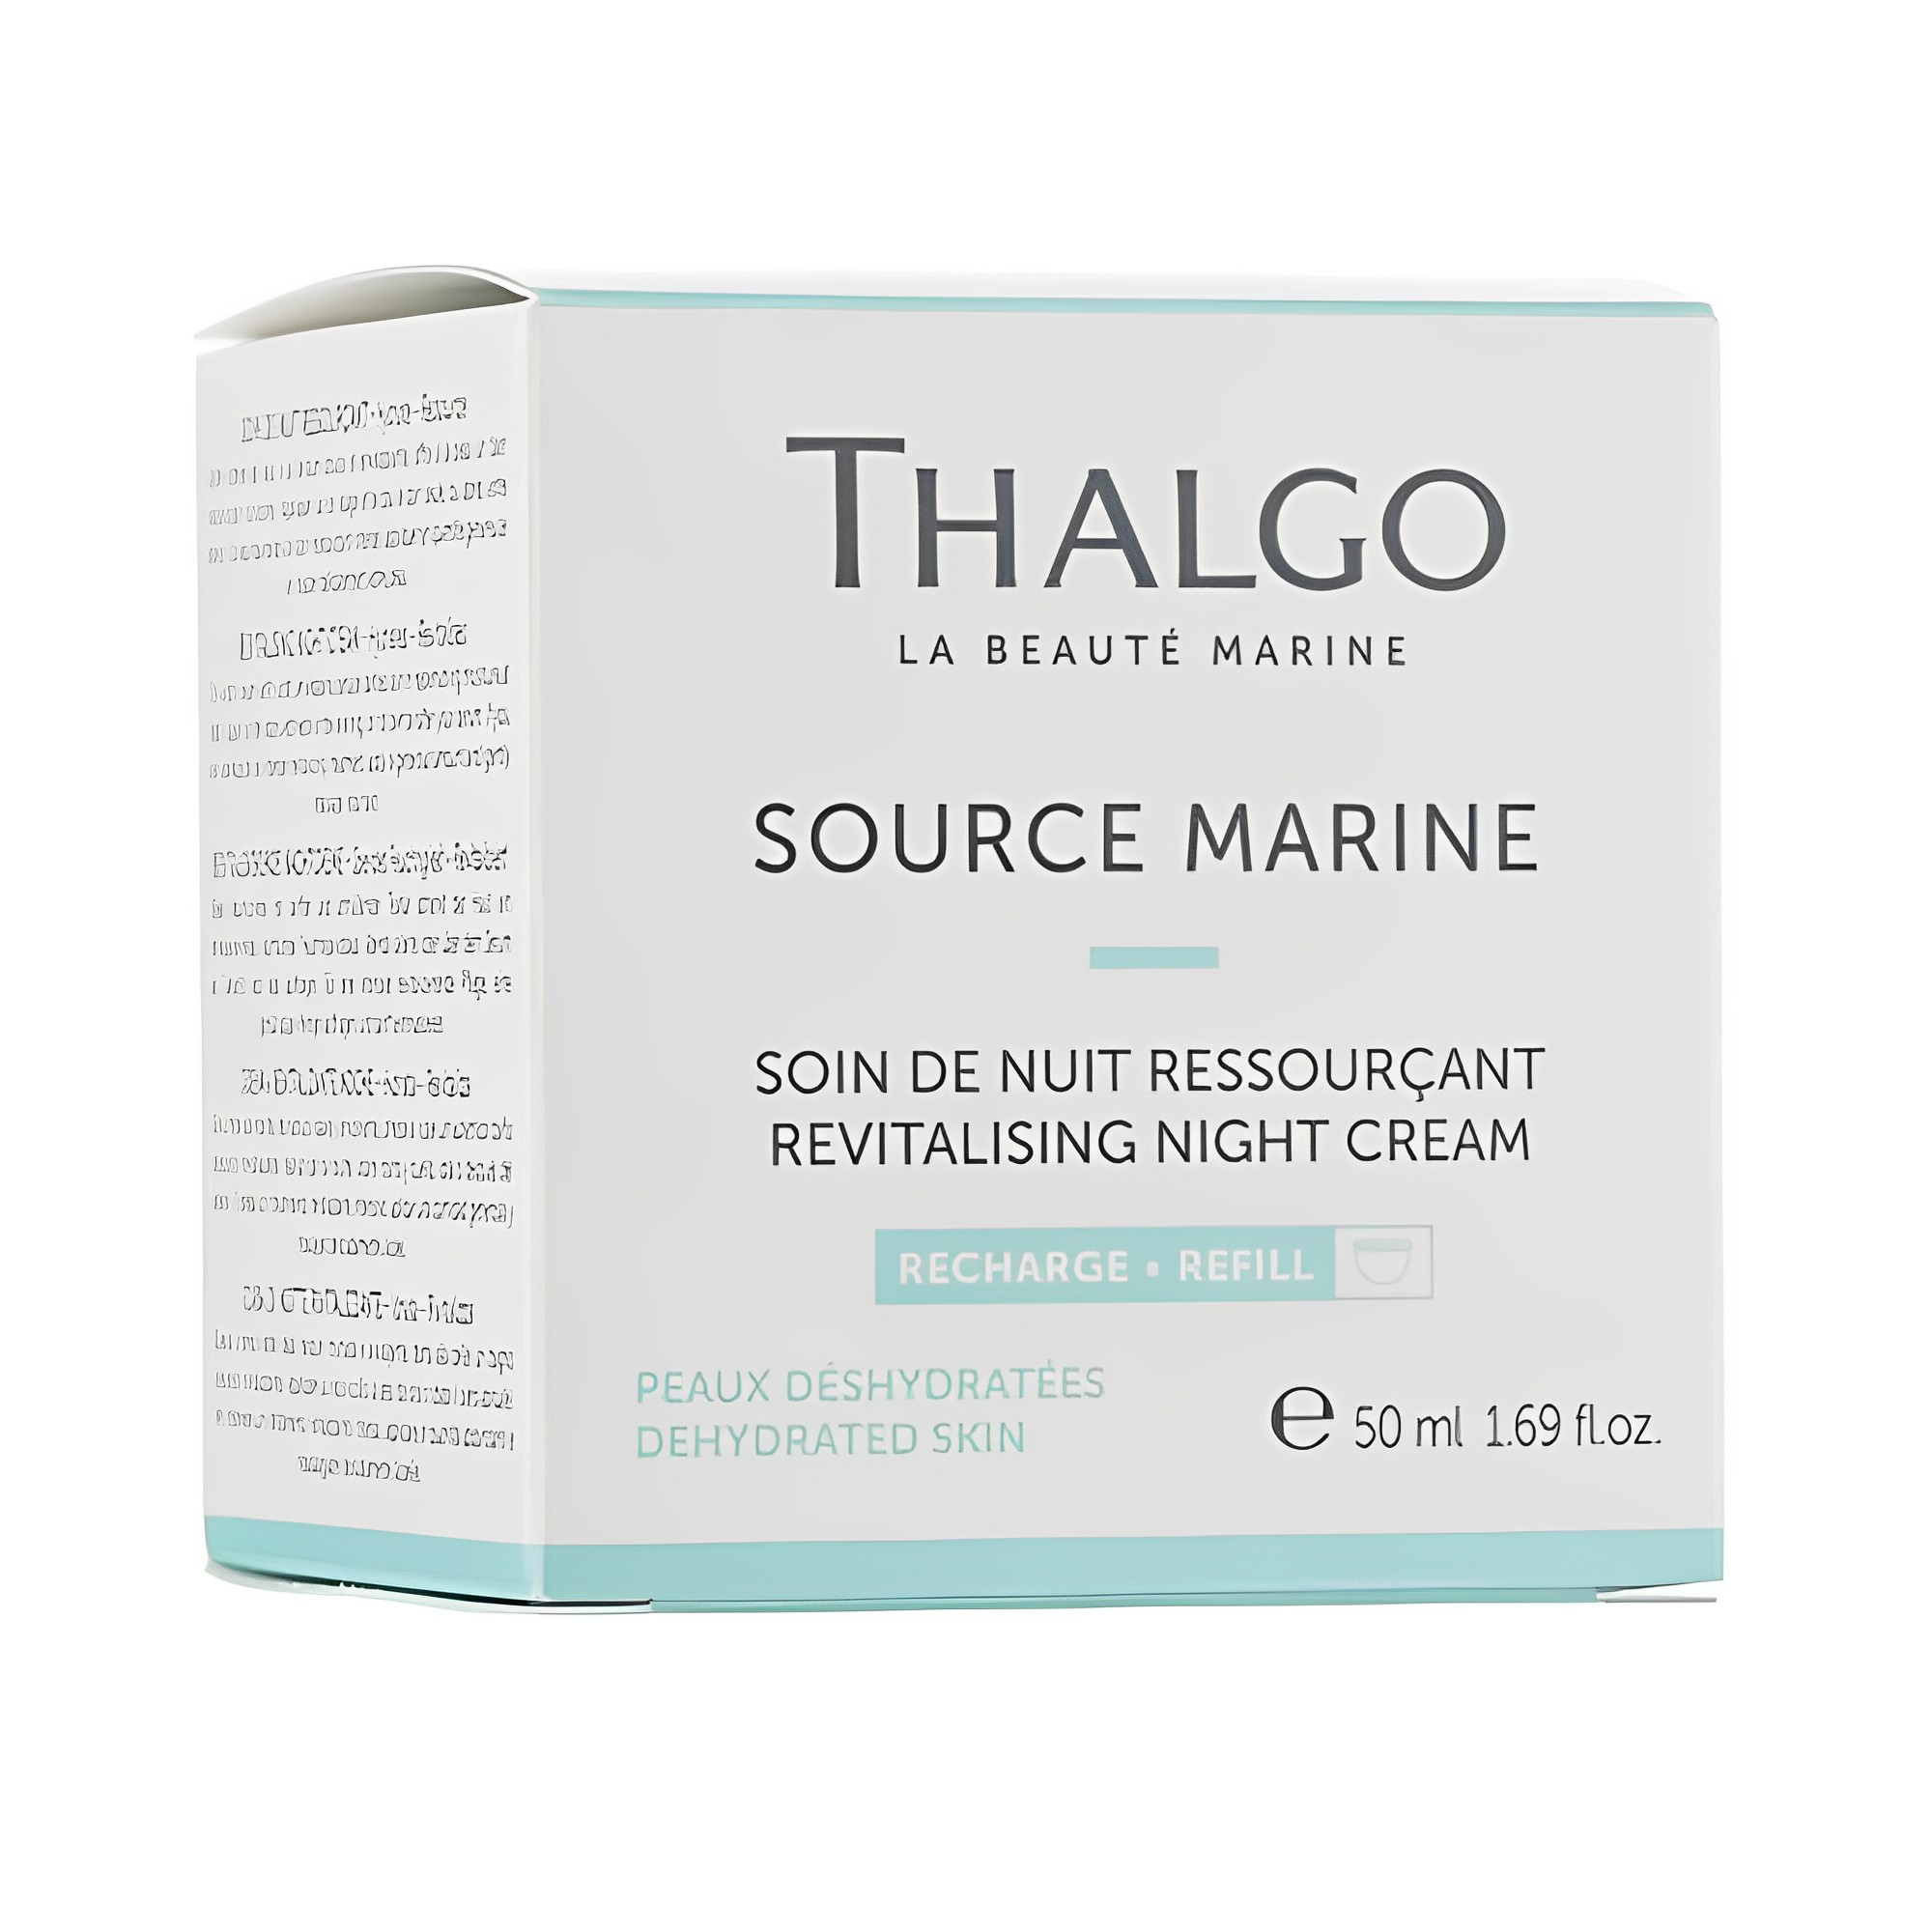 Увлажняющий ночной крем Thalgo Revitalising Night Cream